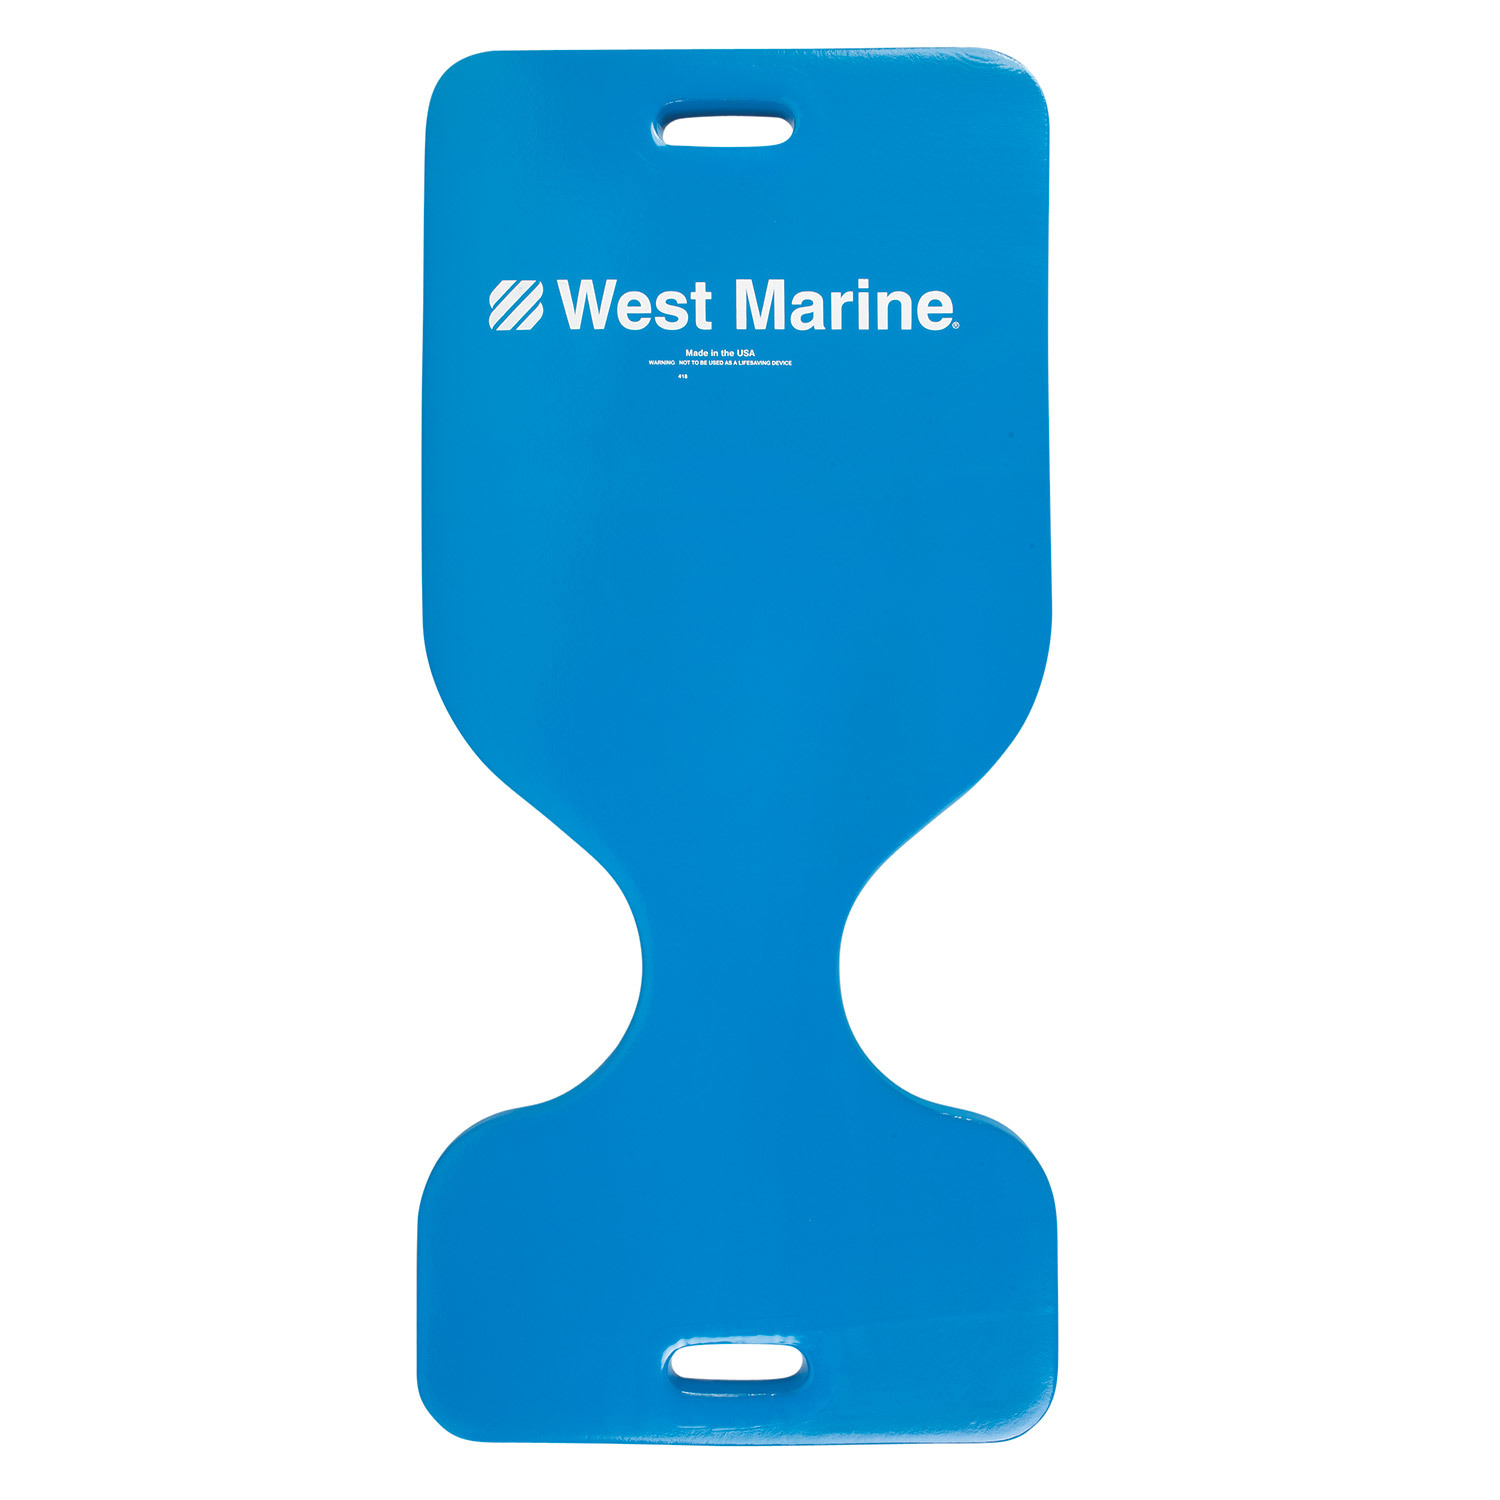 www.westmarine.com